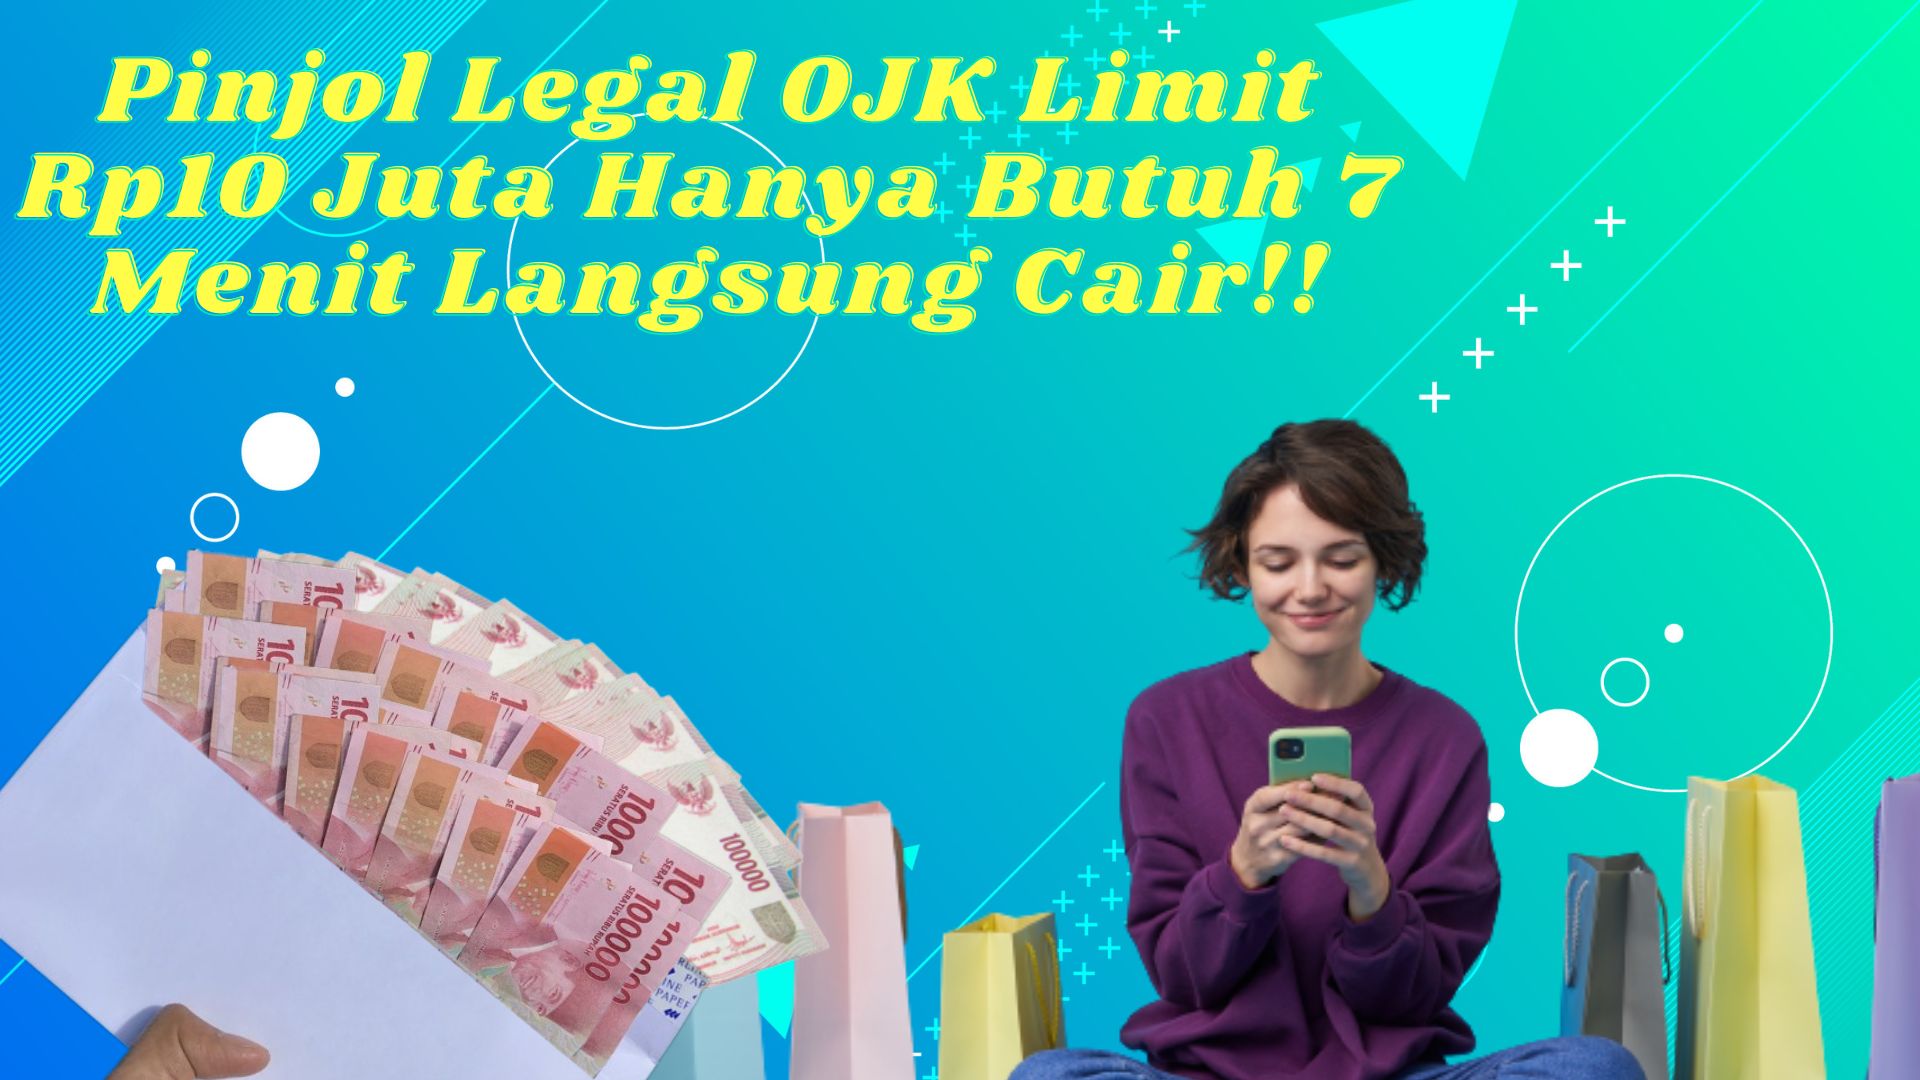 Pinjol Legal OJK Hanya 7 Menit Langsung Cair Rp10 Juta